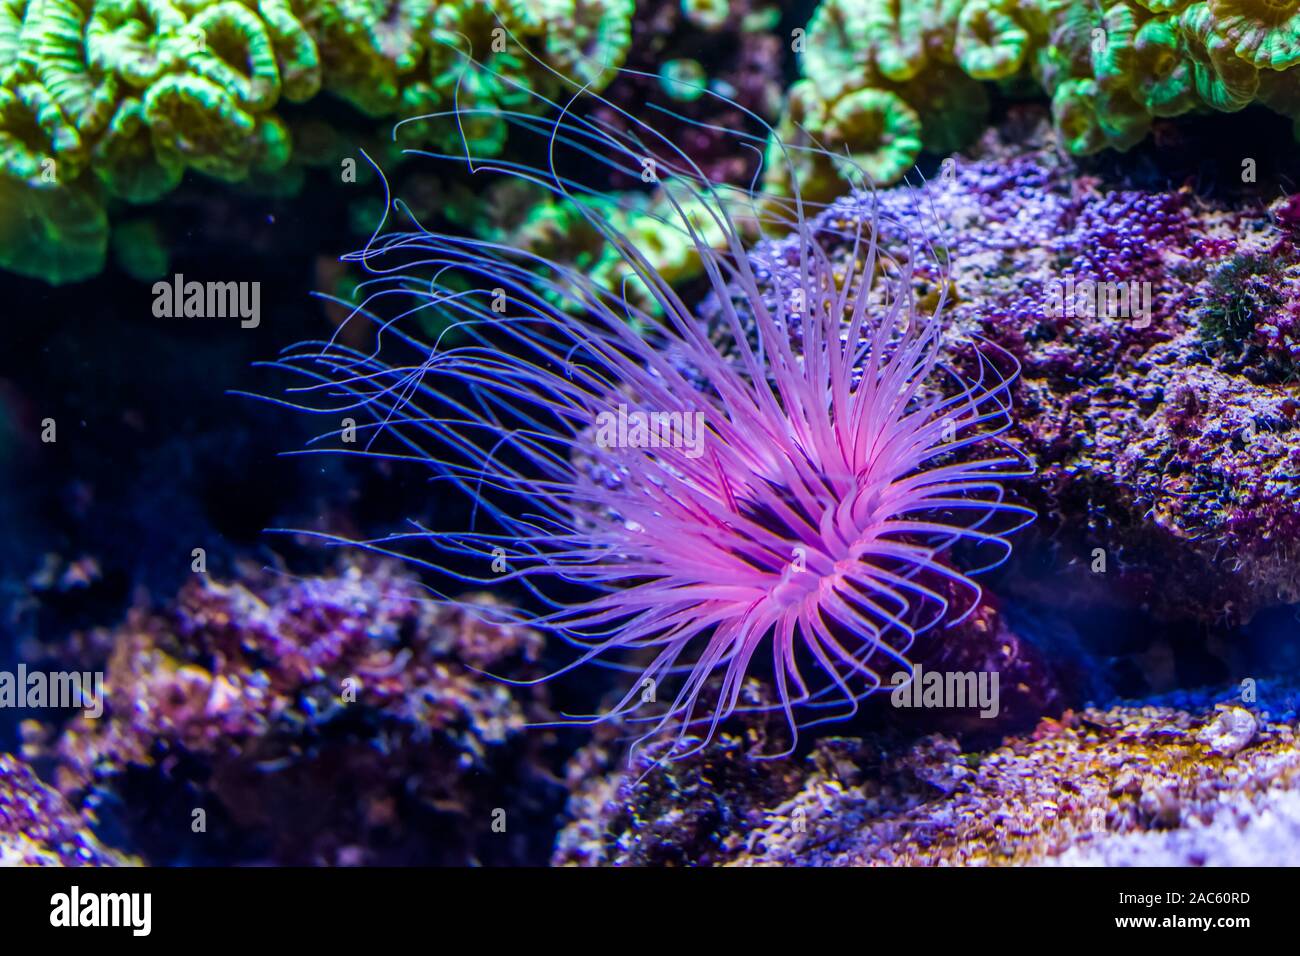 Tubo de flor anémona de mar en primer plano, morado y rosa colores de neón, especie animal tropical del Indo-océano pacífico Foto de stock